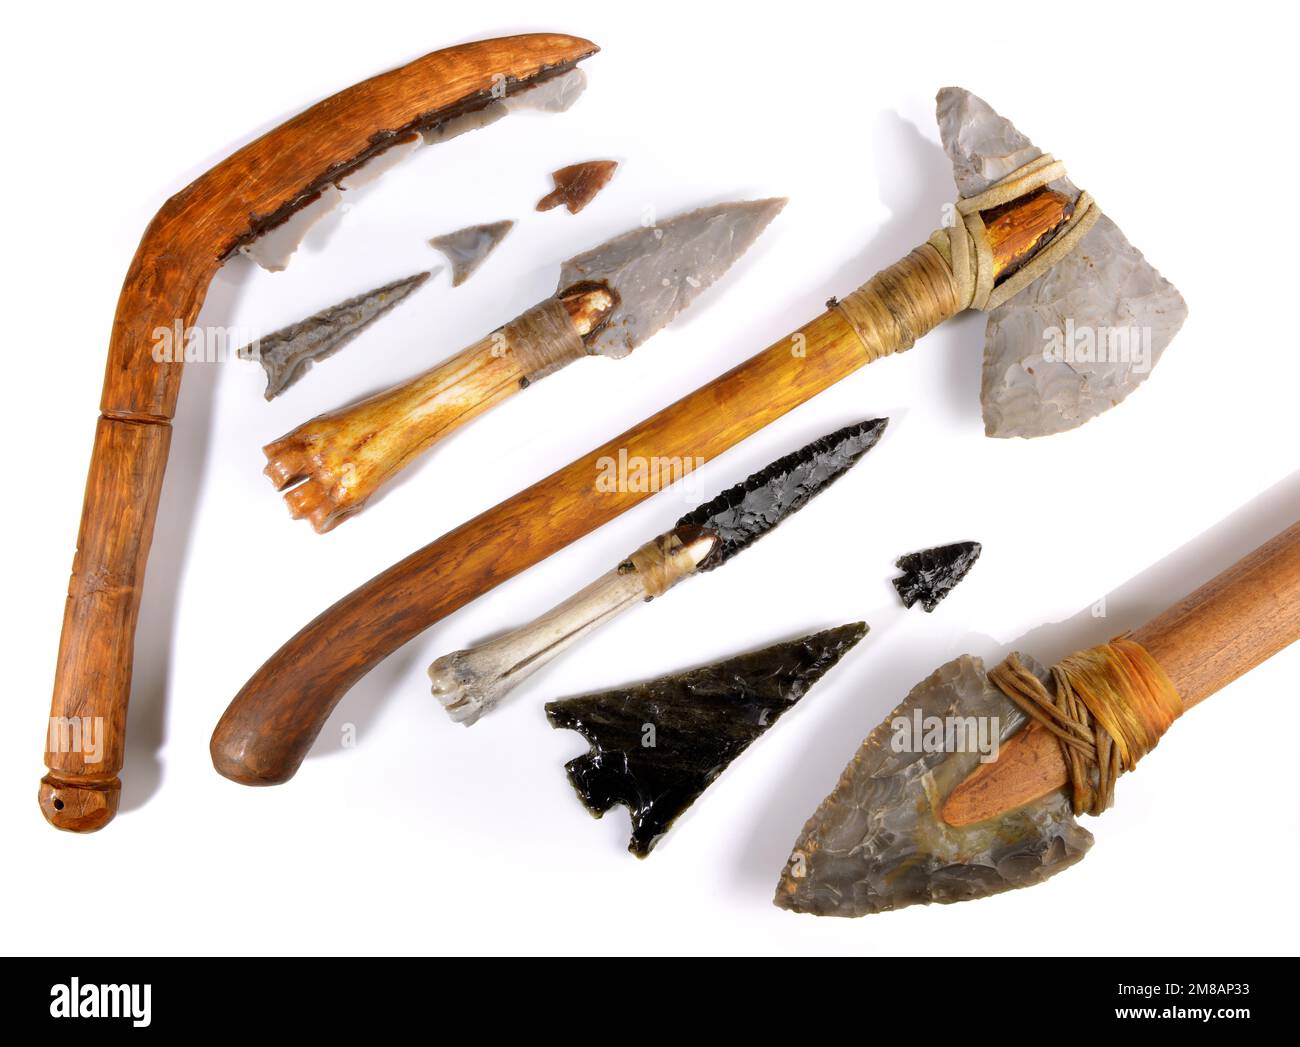 Steinzeit Werkzeuge auf weißem Hintergrund - Steinzeit Handwerk Stockfoto